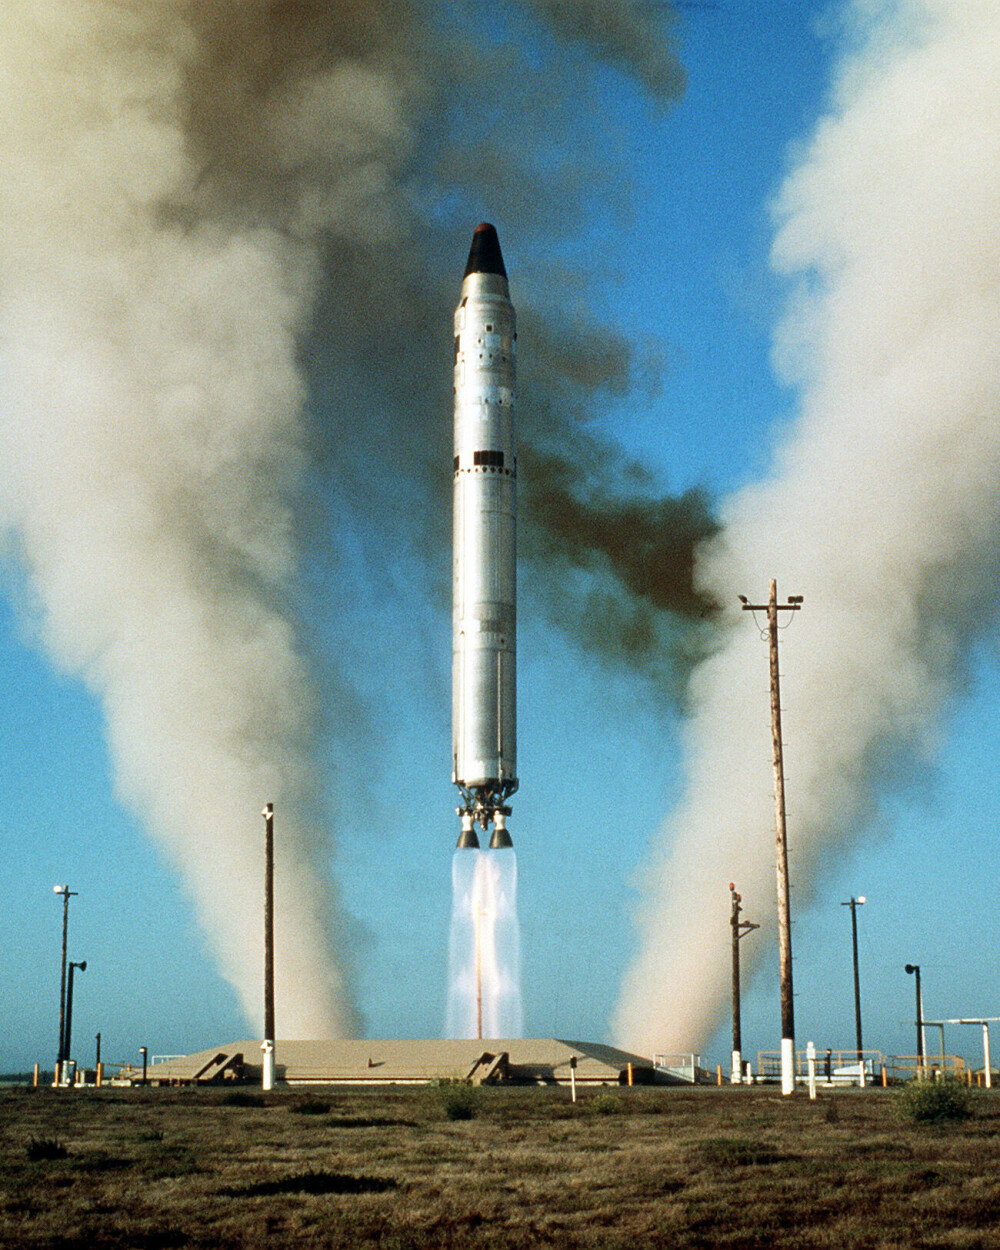 <b>HISTORIENS KRAFTIGSTE:</b> Titan II-missilet var det kraftigste i USAs atomarsenal. De 54 missilene USA hadde, var nok til å utslette det meste av Sovjetunionen.